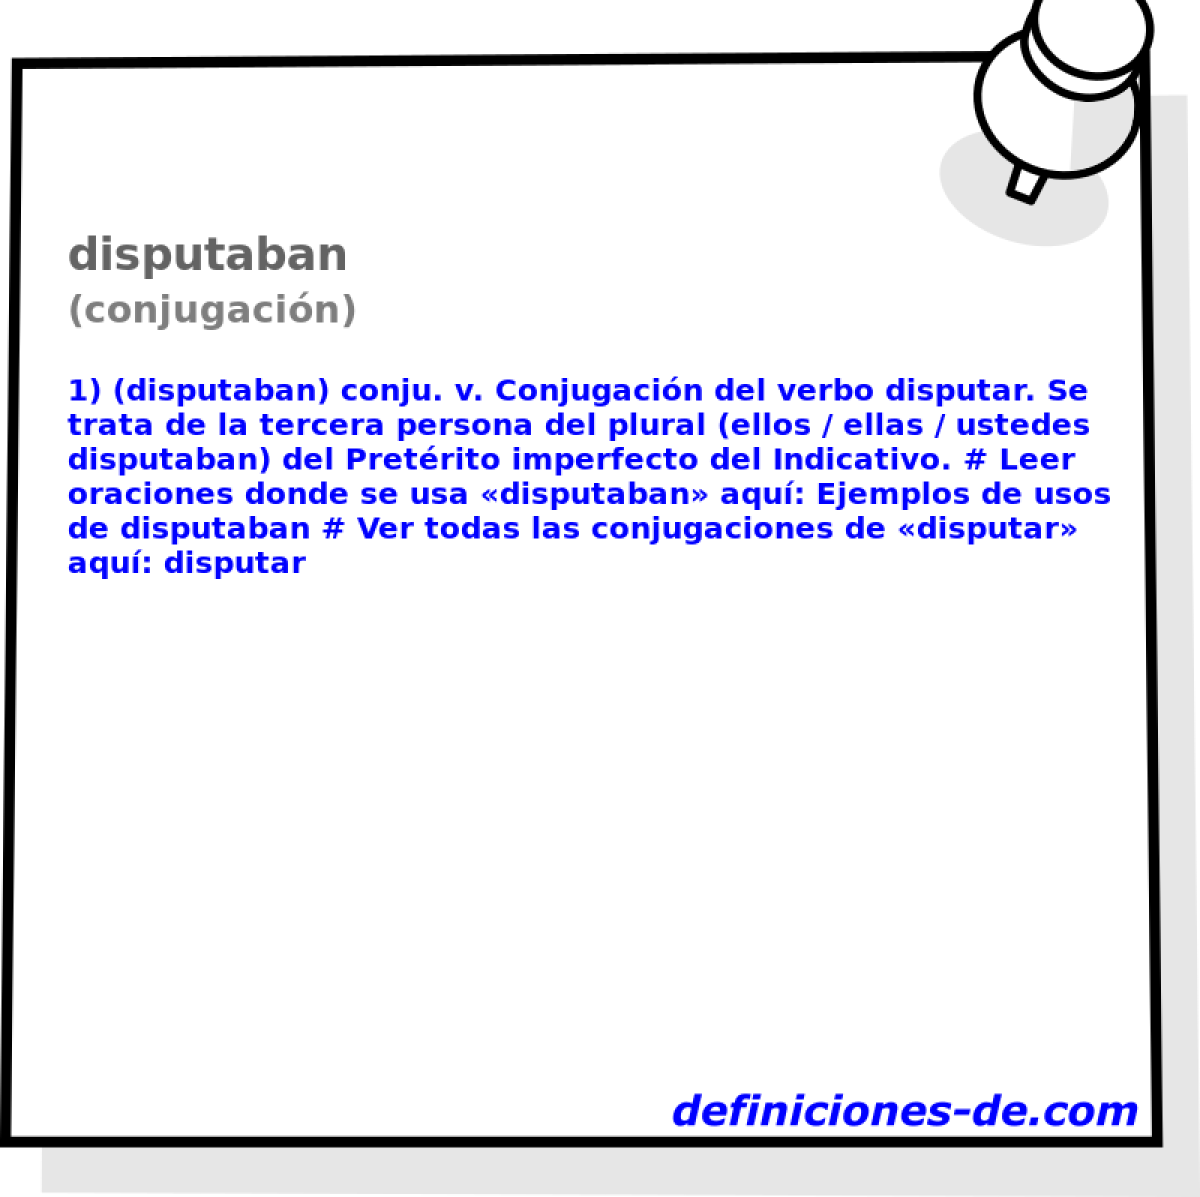 disputaban (conjugacin)